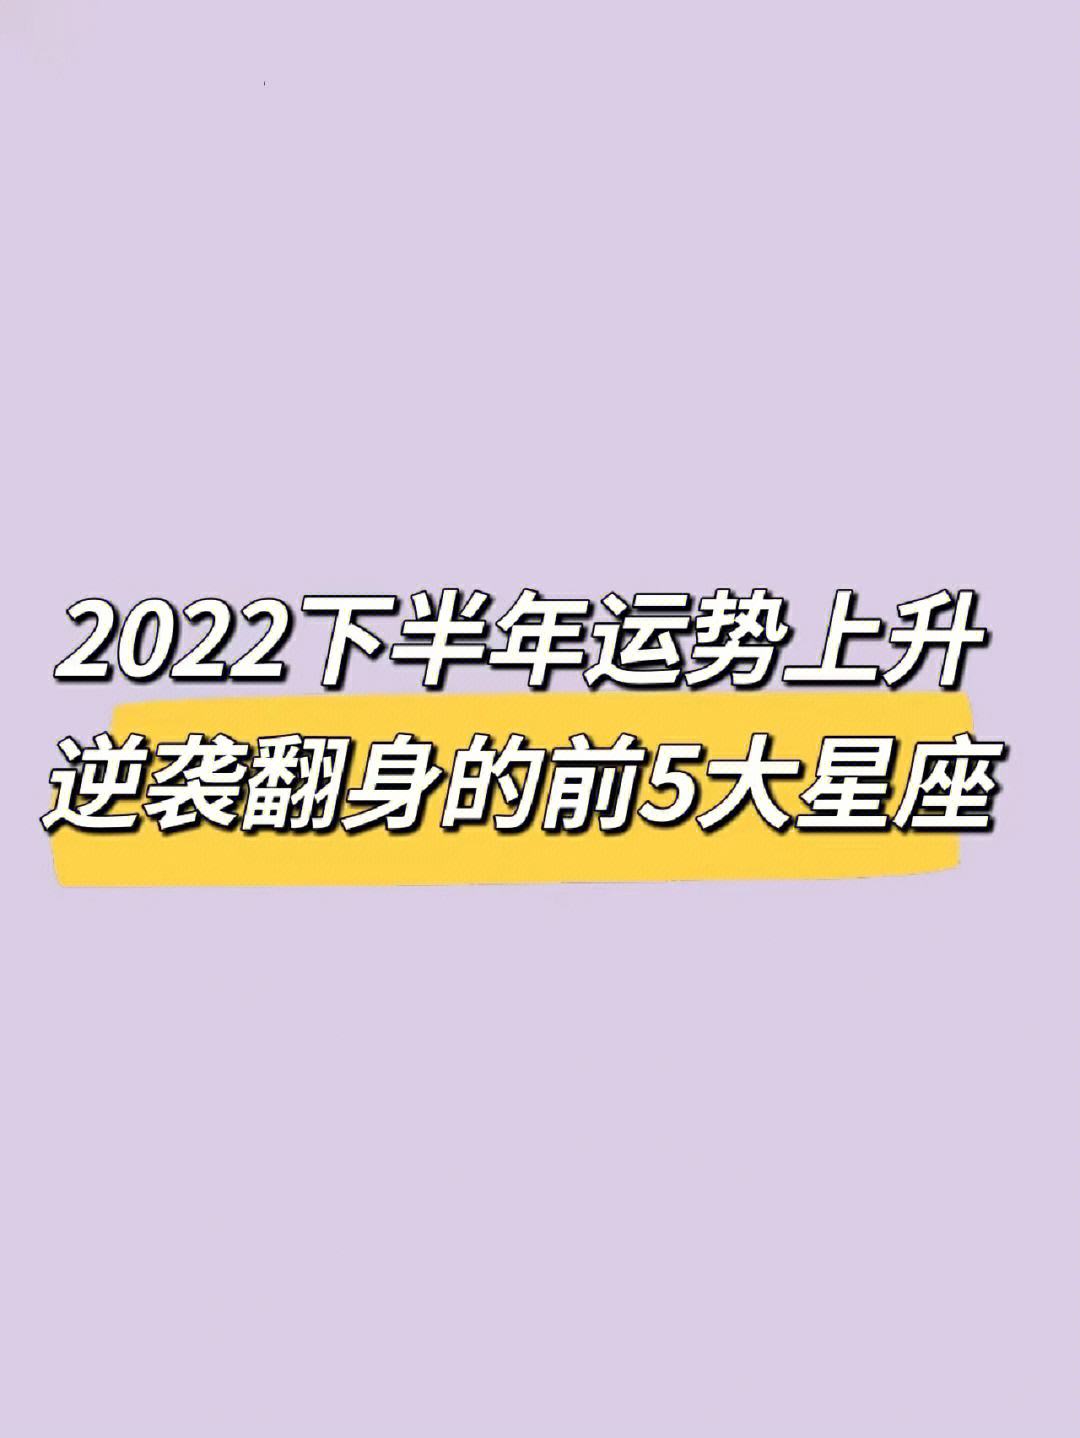 2022五月星座运势 2022年1月星座运势